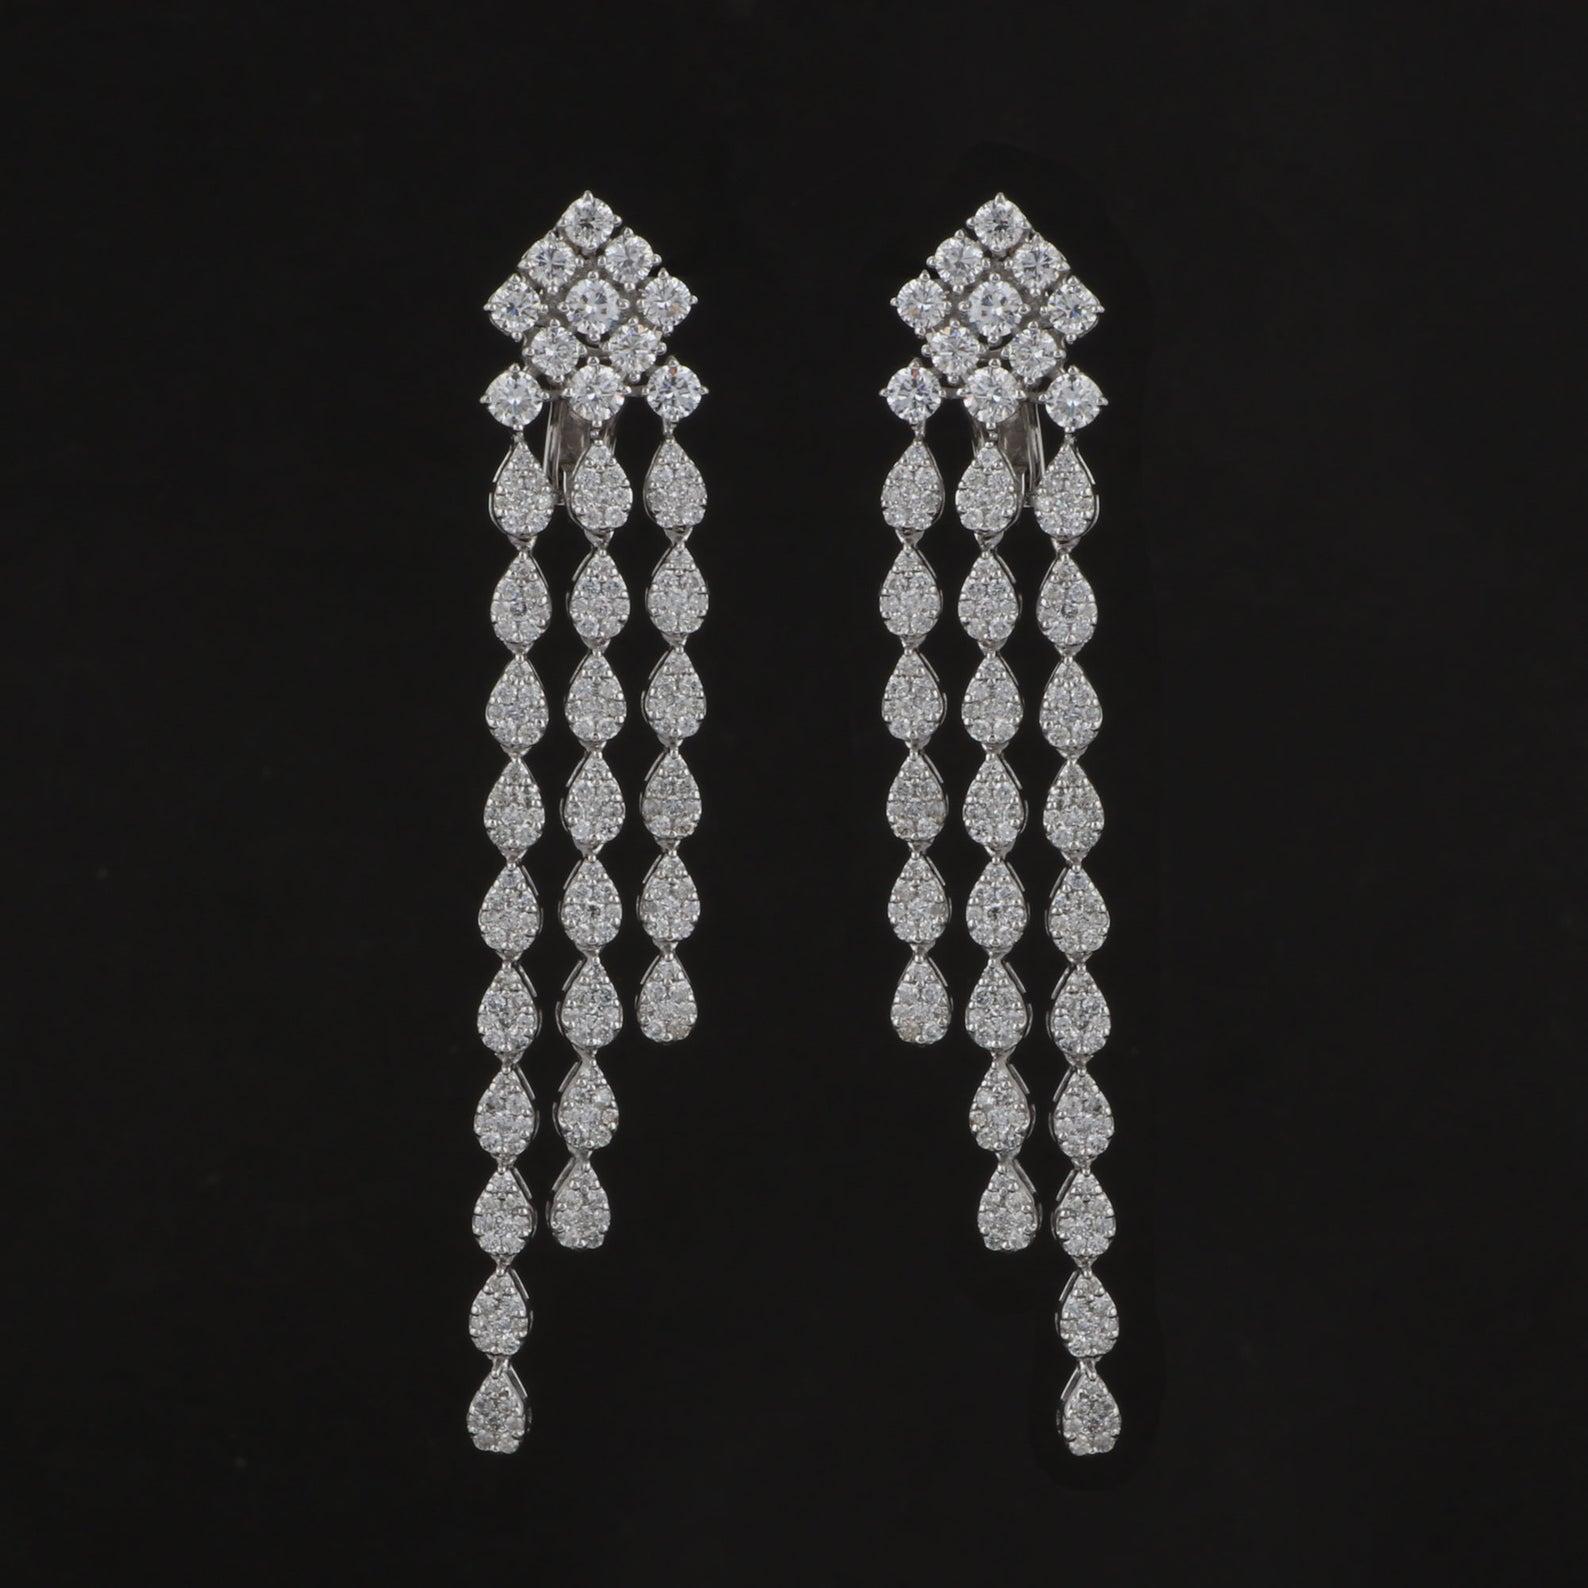 Mixed Cut 4.85 Carat Diamond 18 Karat White Gold Chandelier Earrings For Sale